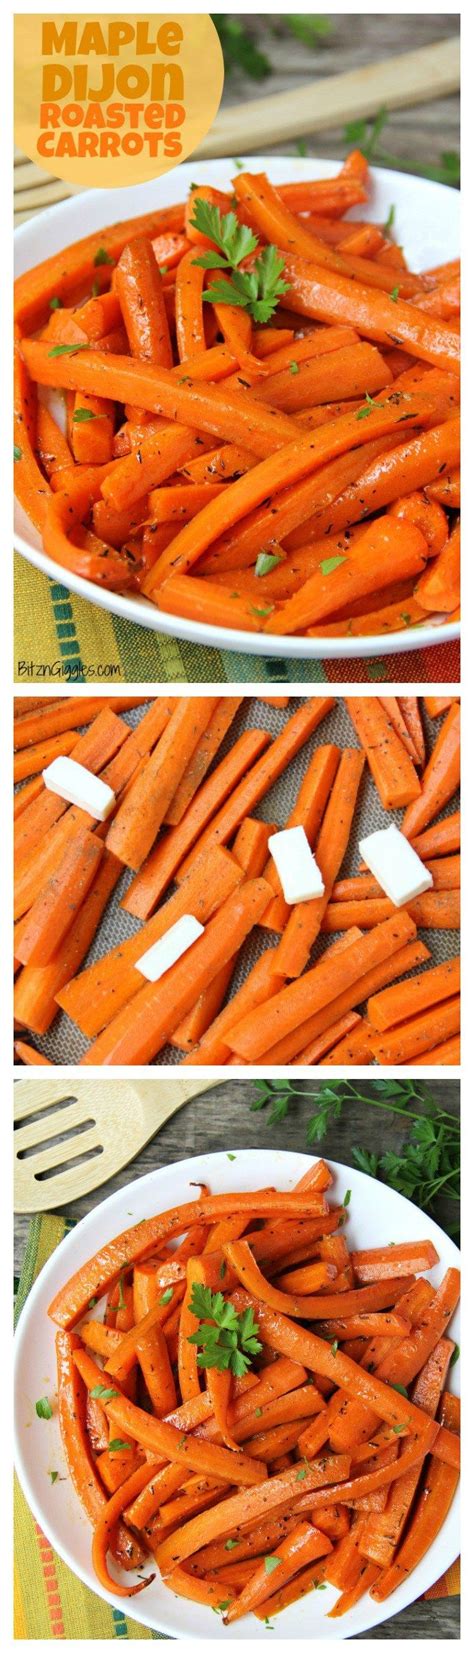 Maple Dijon Glazed Carrots Recipe Glazed Carrots Recipes Food